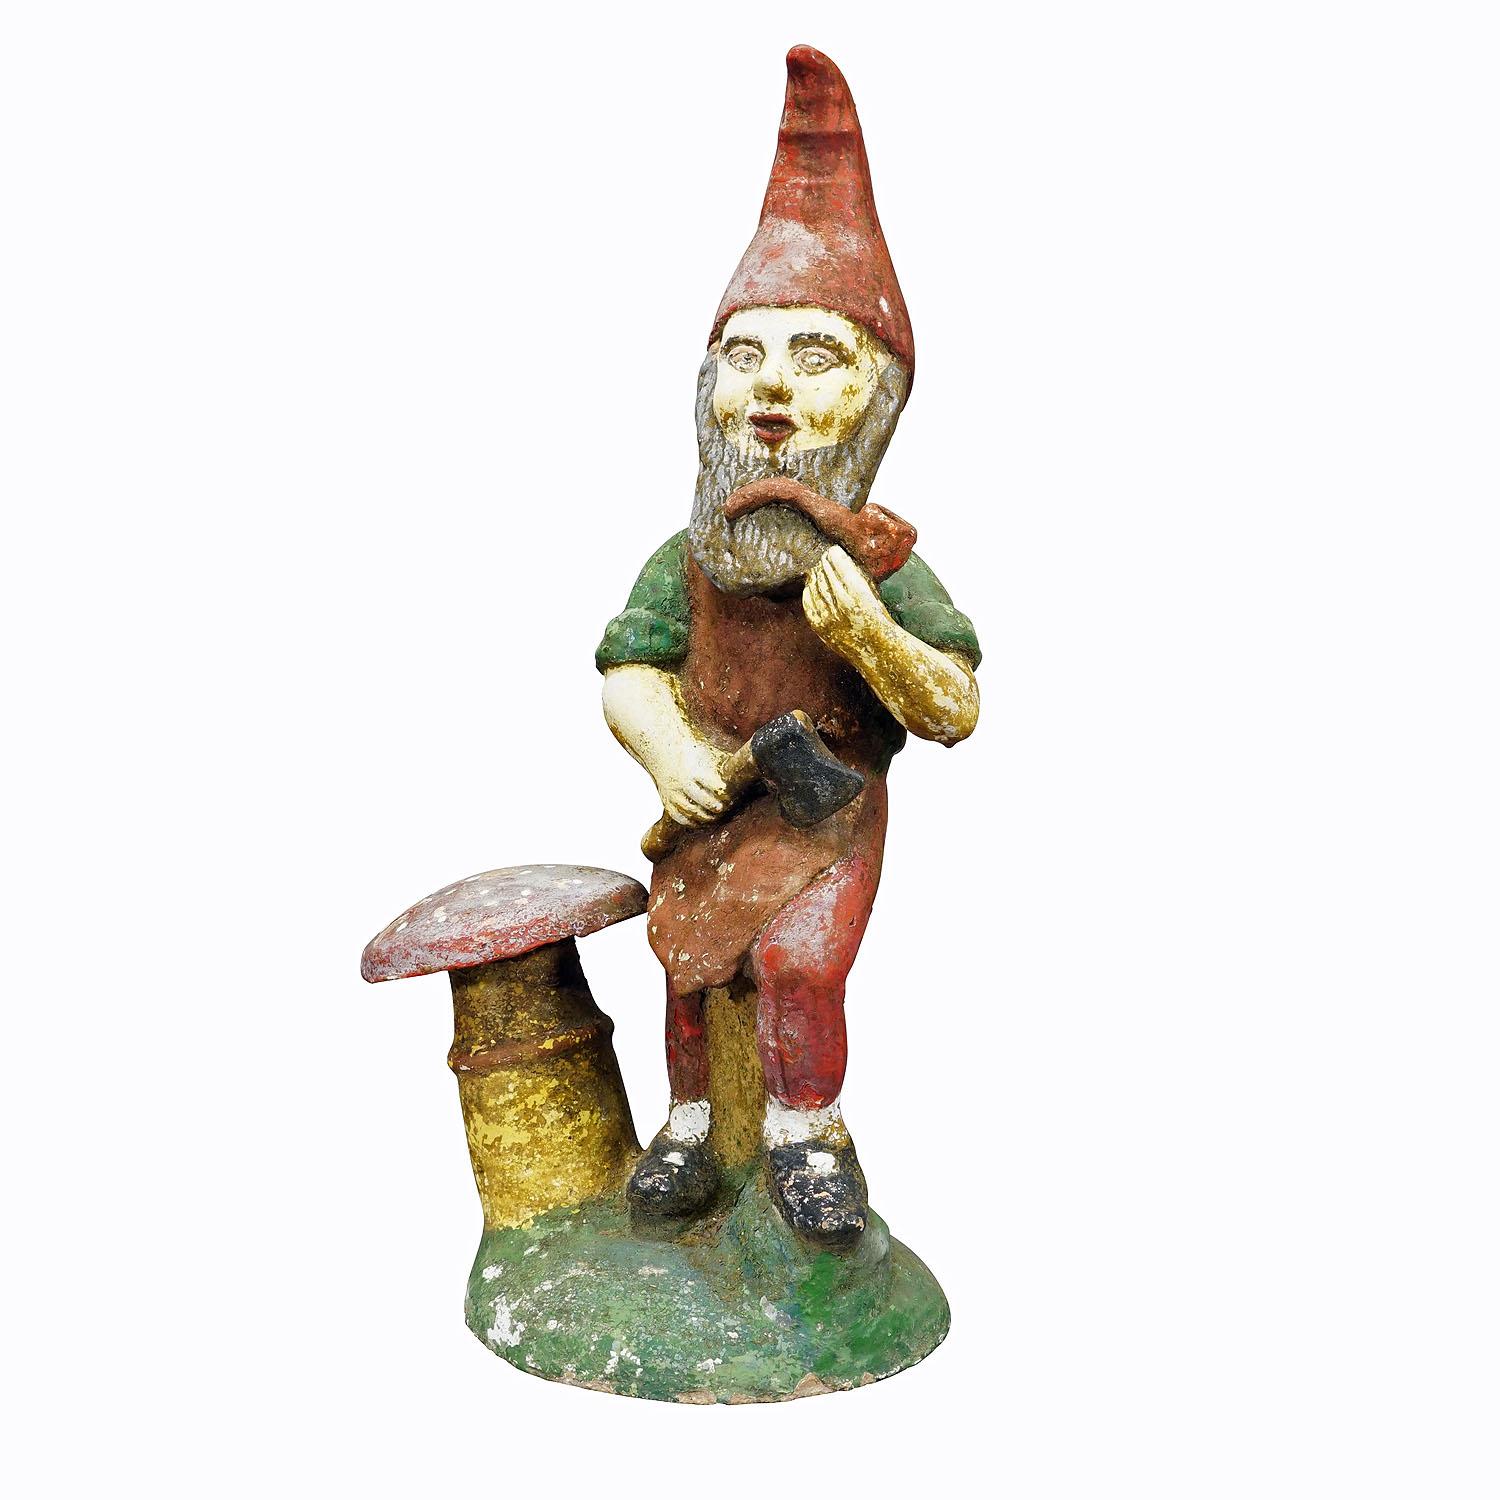 Grand Gnome de jardin en terre cuite avec tabouret à perles, Allemagne, vers 1920

Grand nain de jardin allemand, vers les années 1920. Le gnome tient une pipe et une hache dans ses mains et se tient à côté d'un crapaud. Bon état d'usage vintage